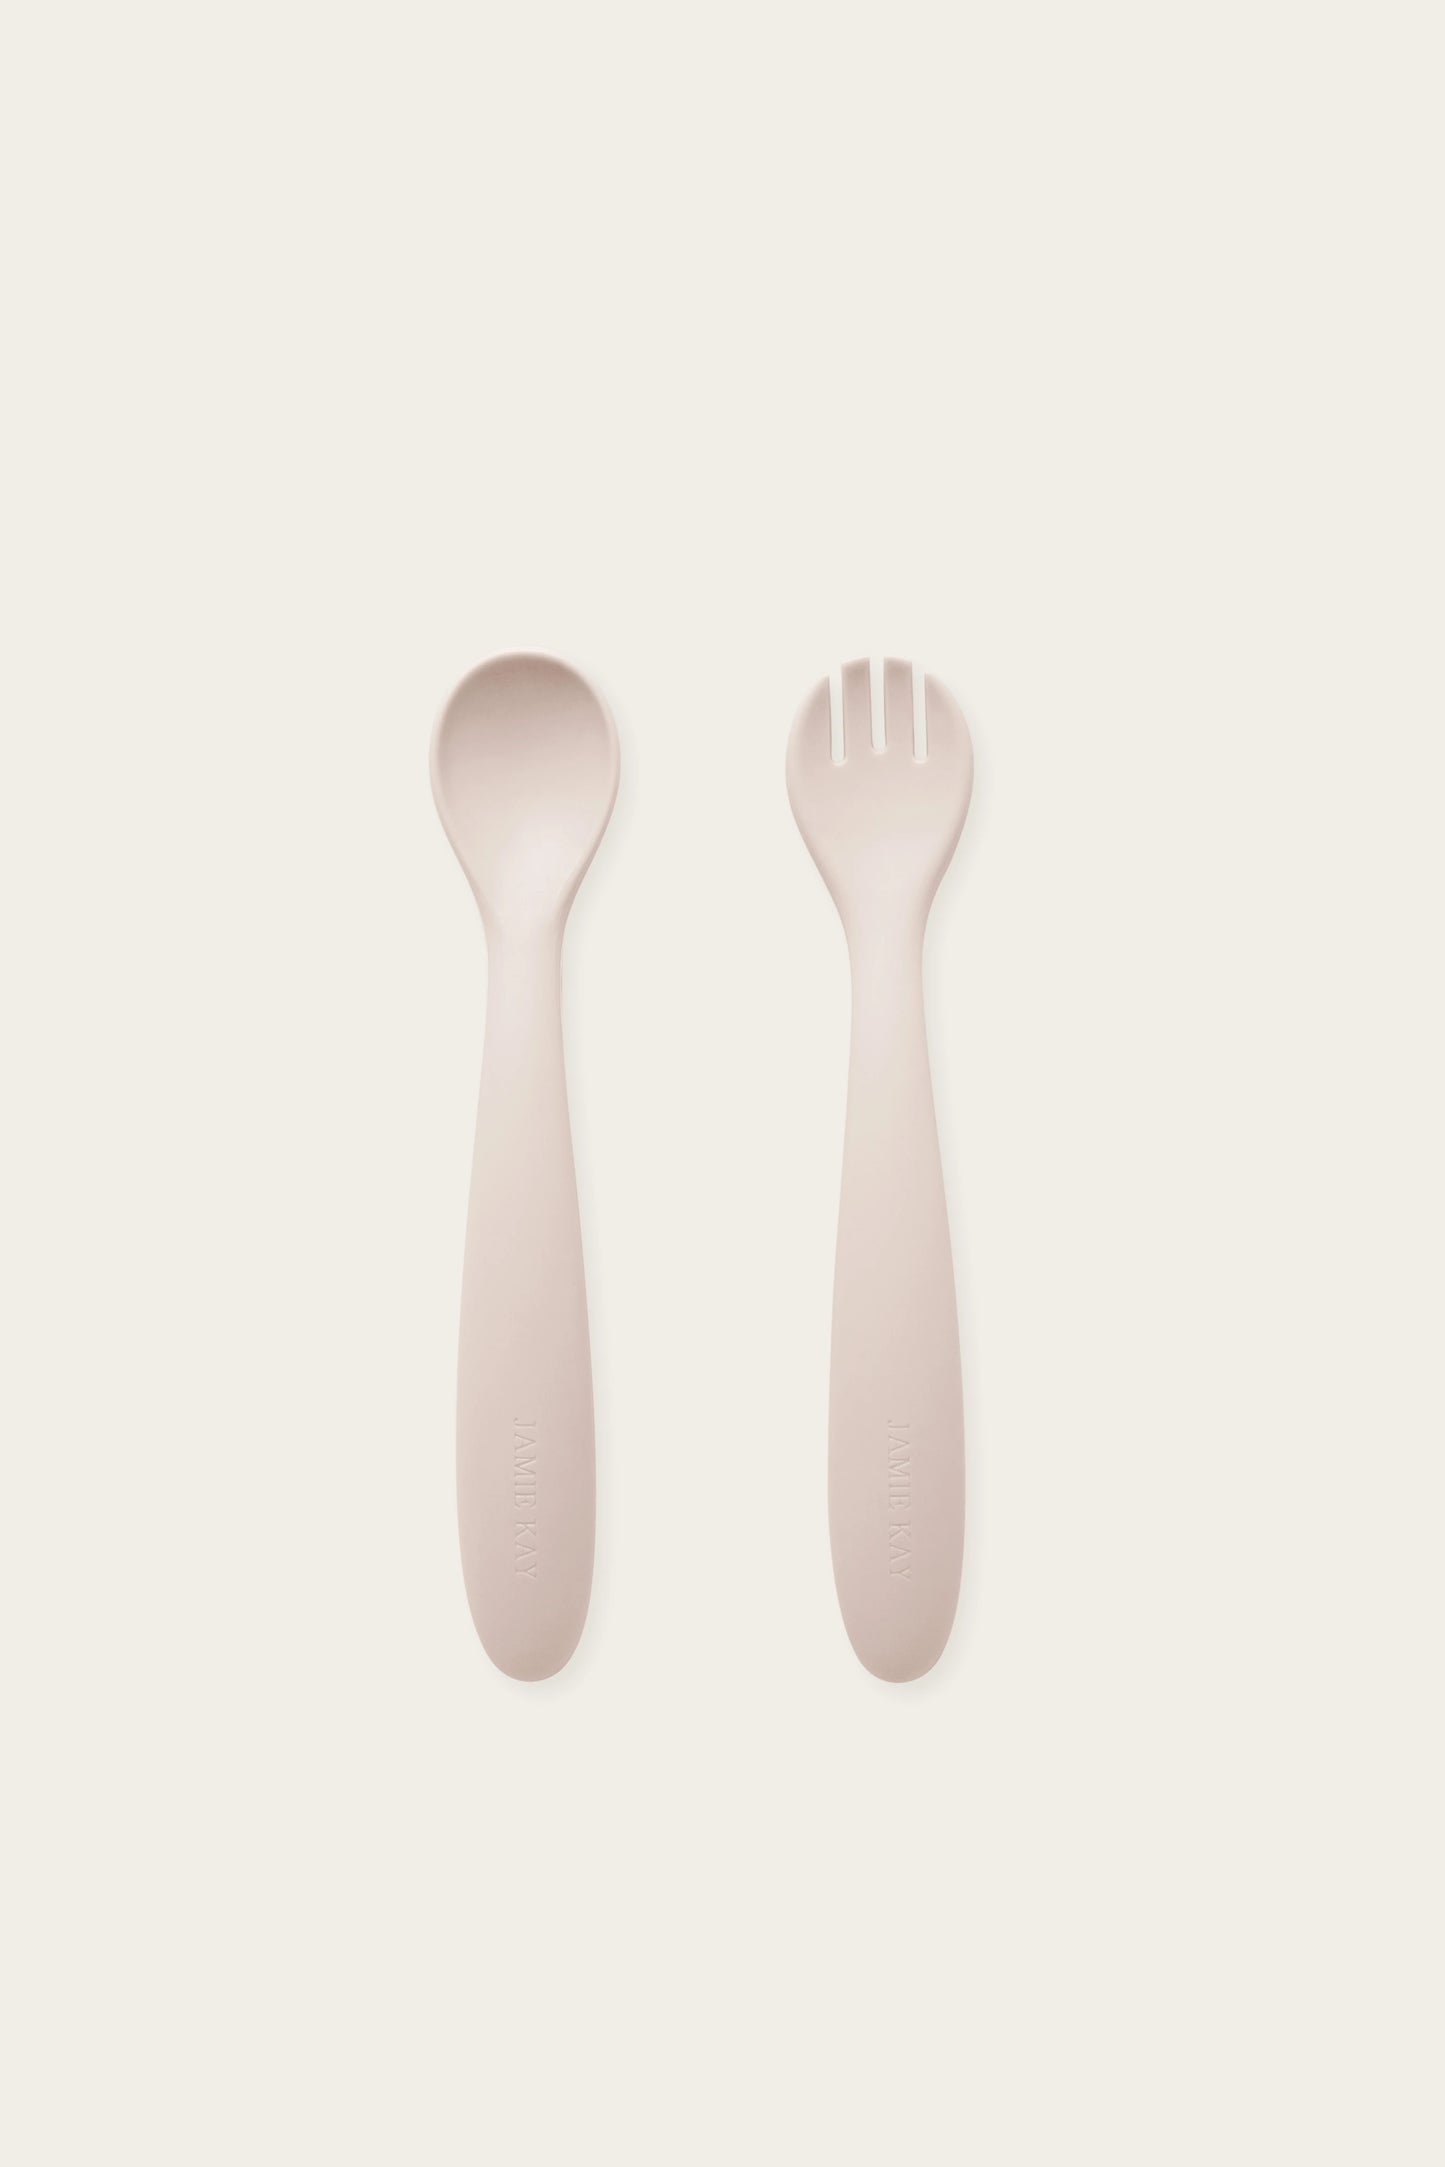 Jamie Kay | Spoon & Fork Set - Pearl